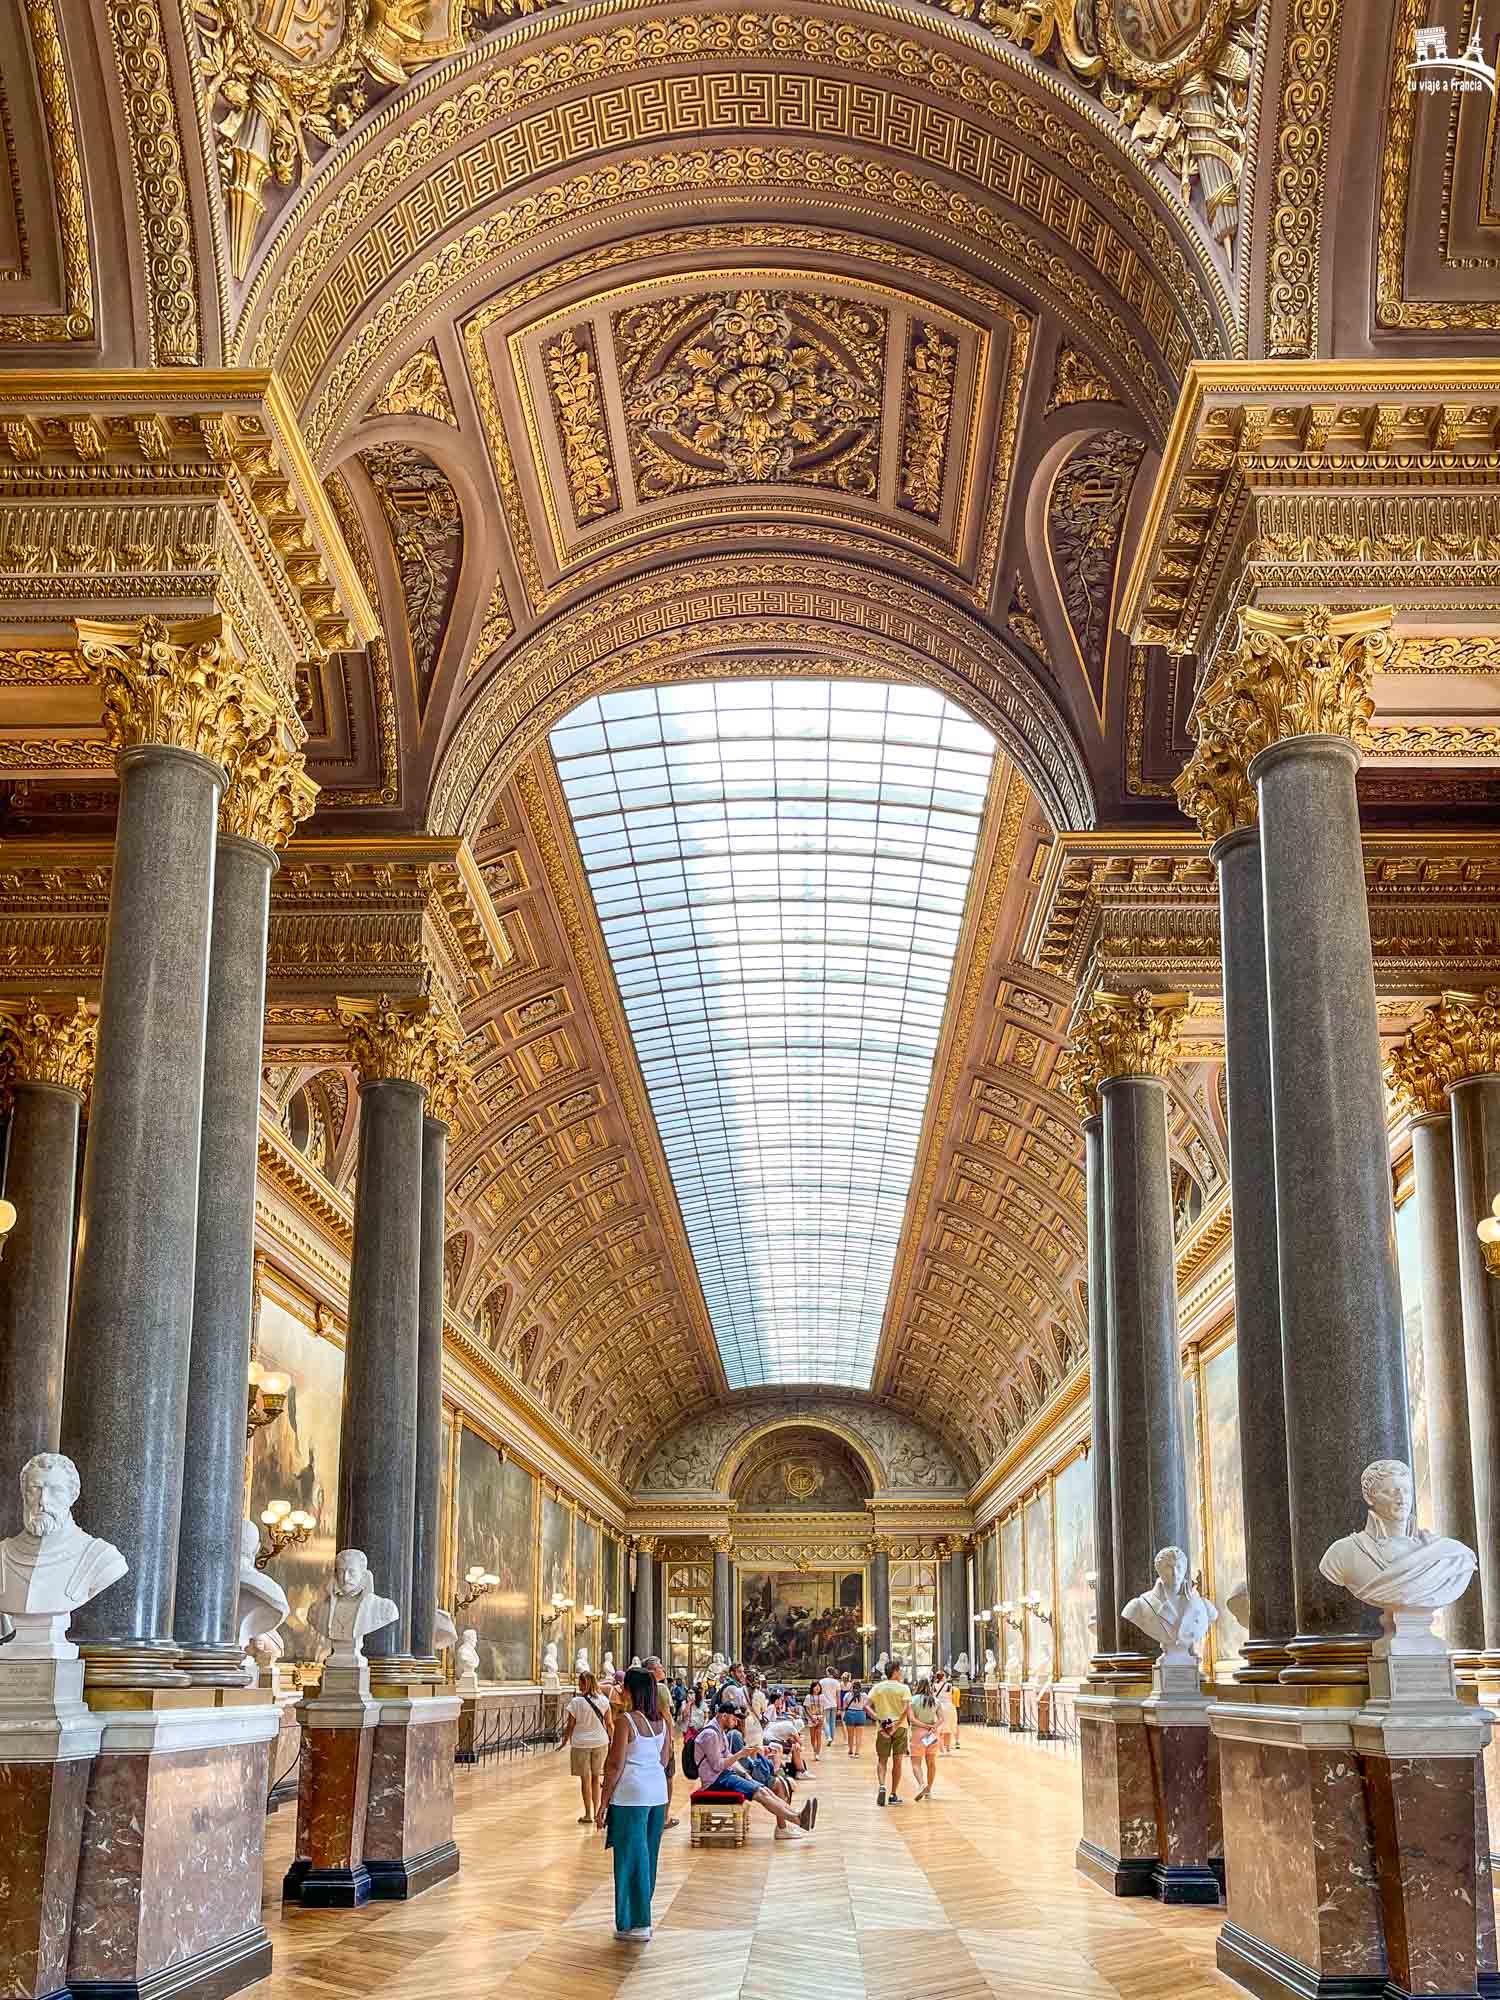 Galería de las Batallas, Palacio de Versalles